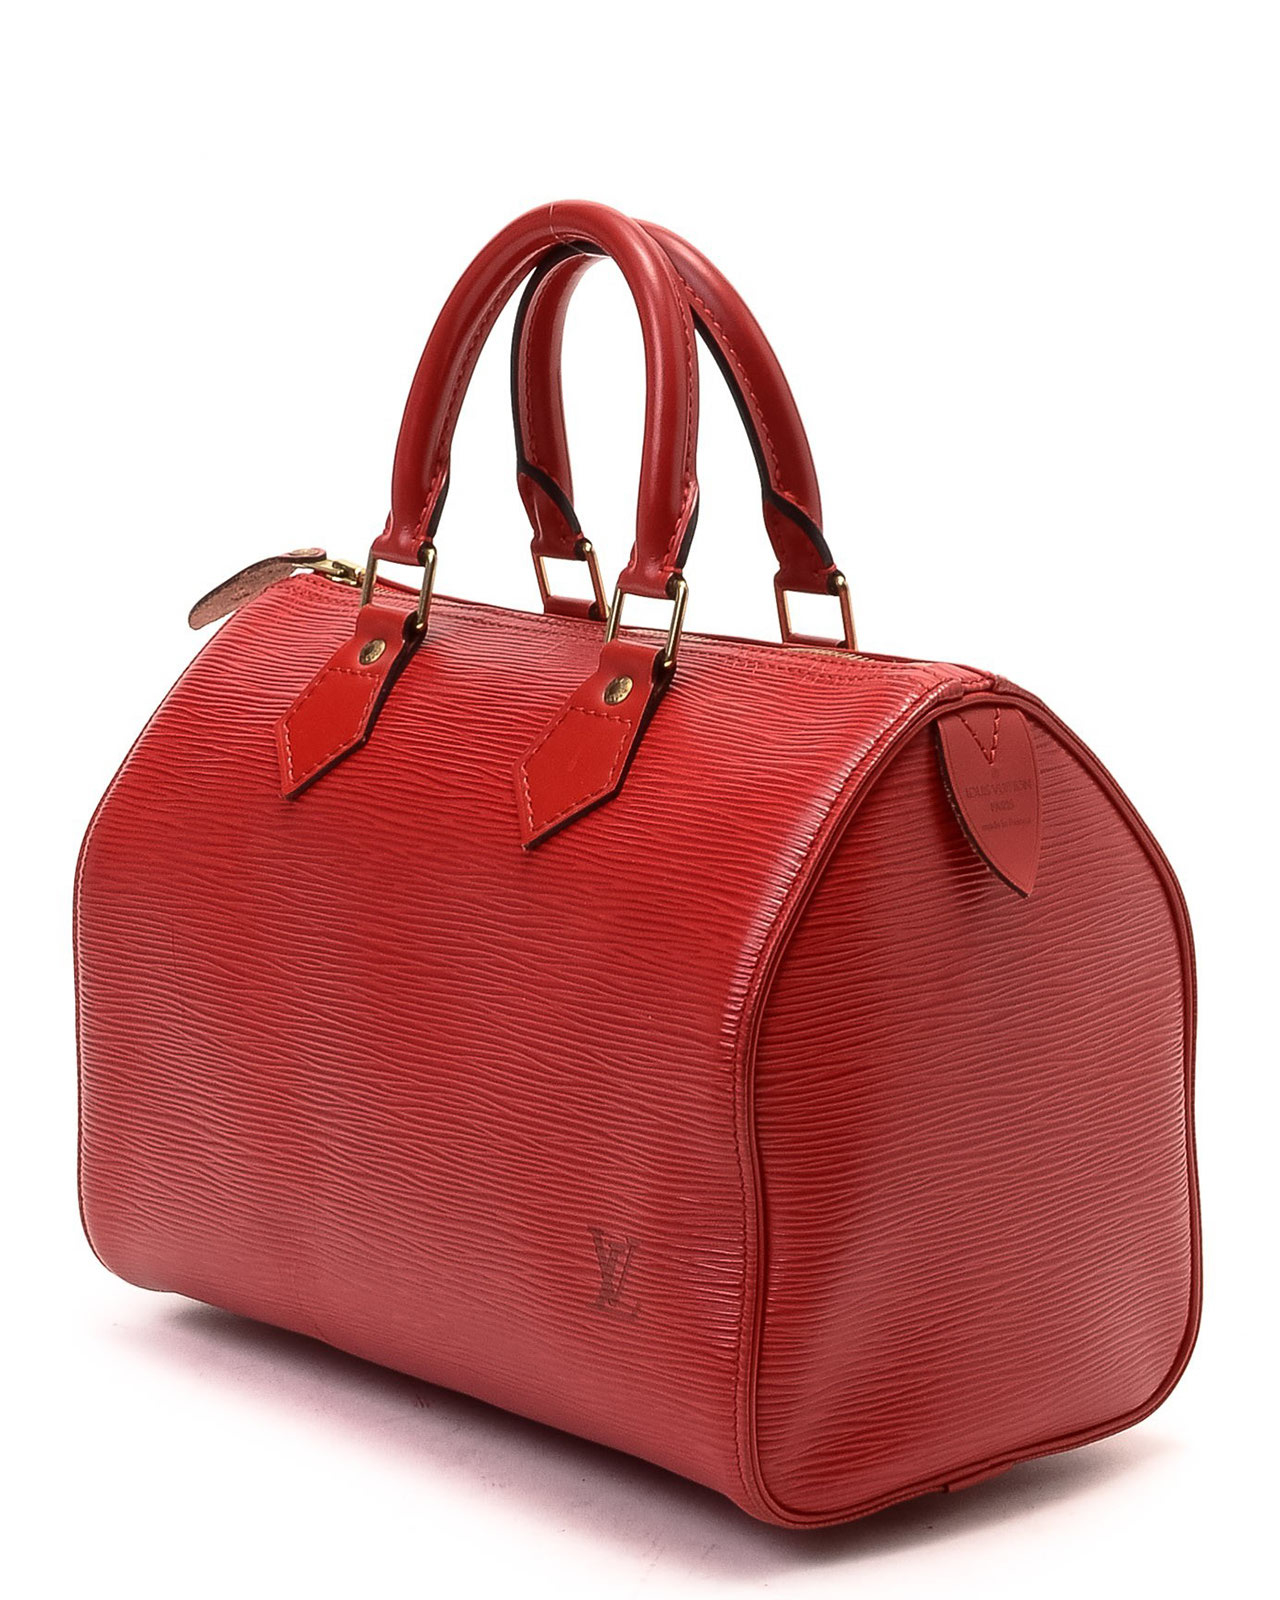 Louis Vuitton Red Speedy 25 Handbag - Lyst